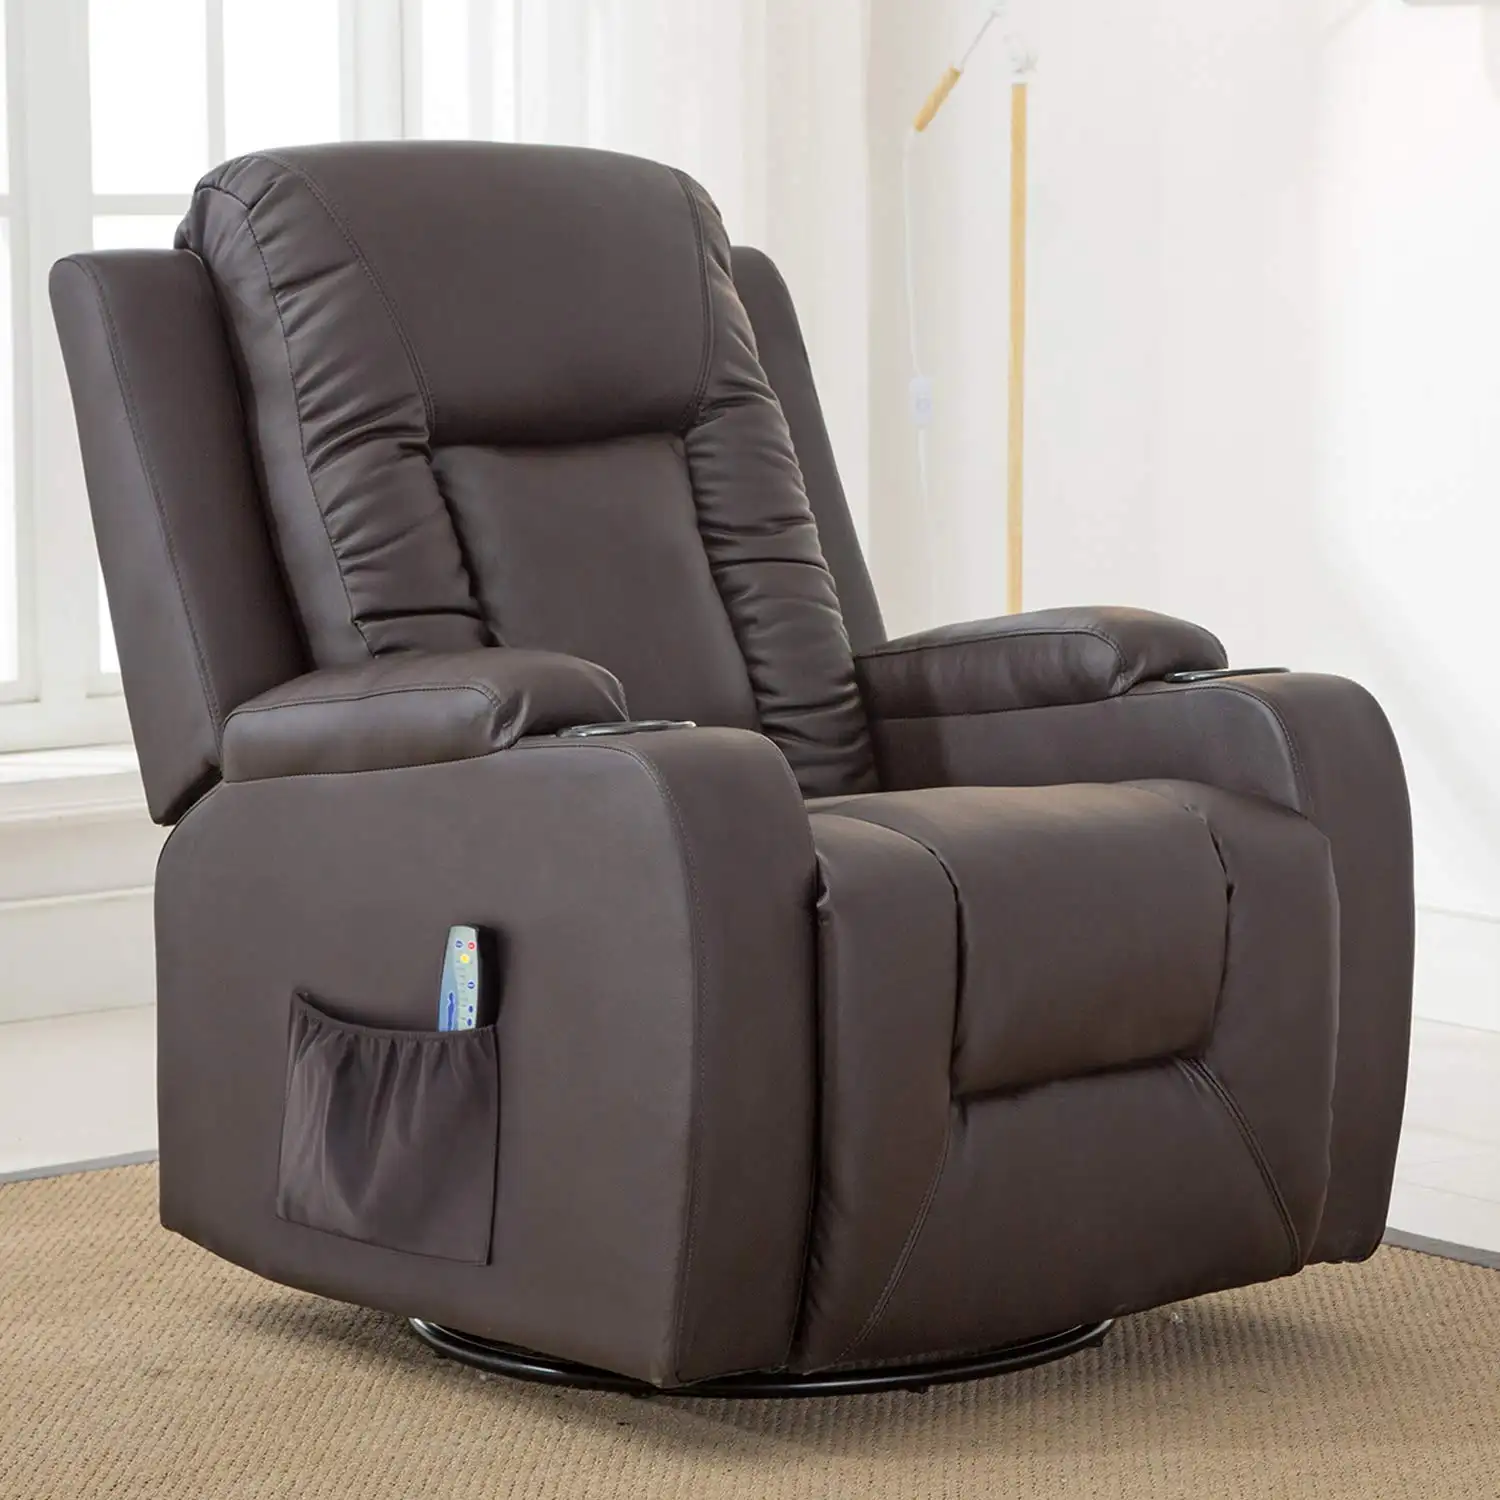 최신 디자인 다기능 사무실 전원 안락 의자 소파 의자 마사지 기능